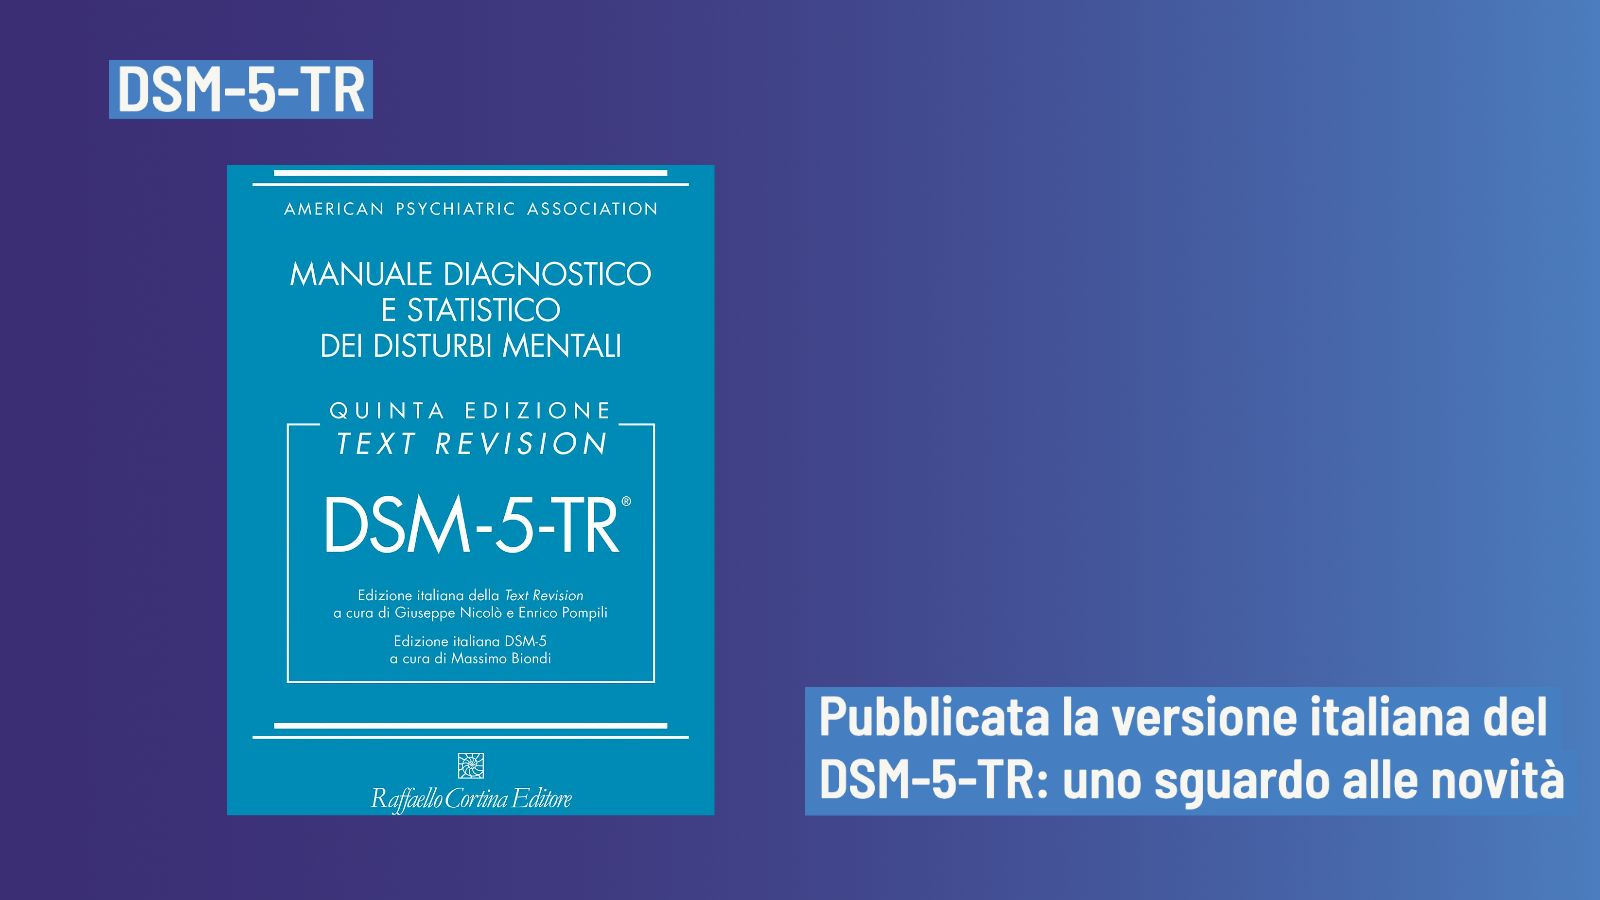 DSM-5-TR, pubblicata la versione italiana: quali novità e cambiamenti